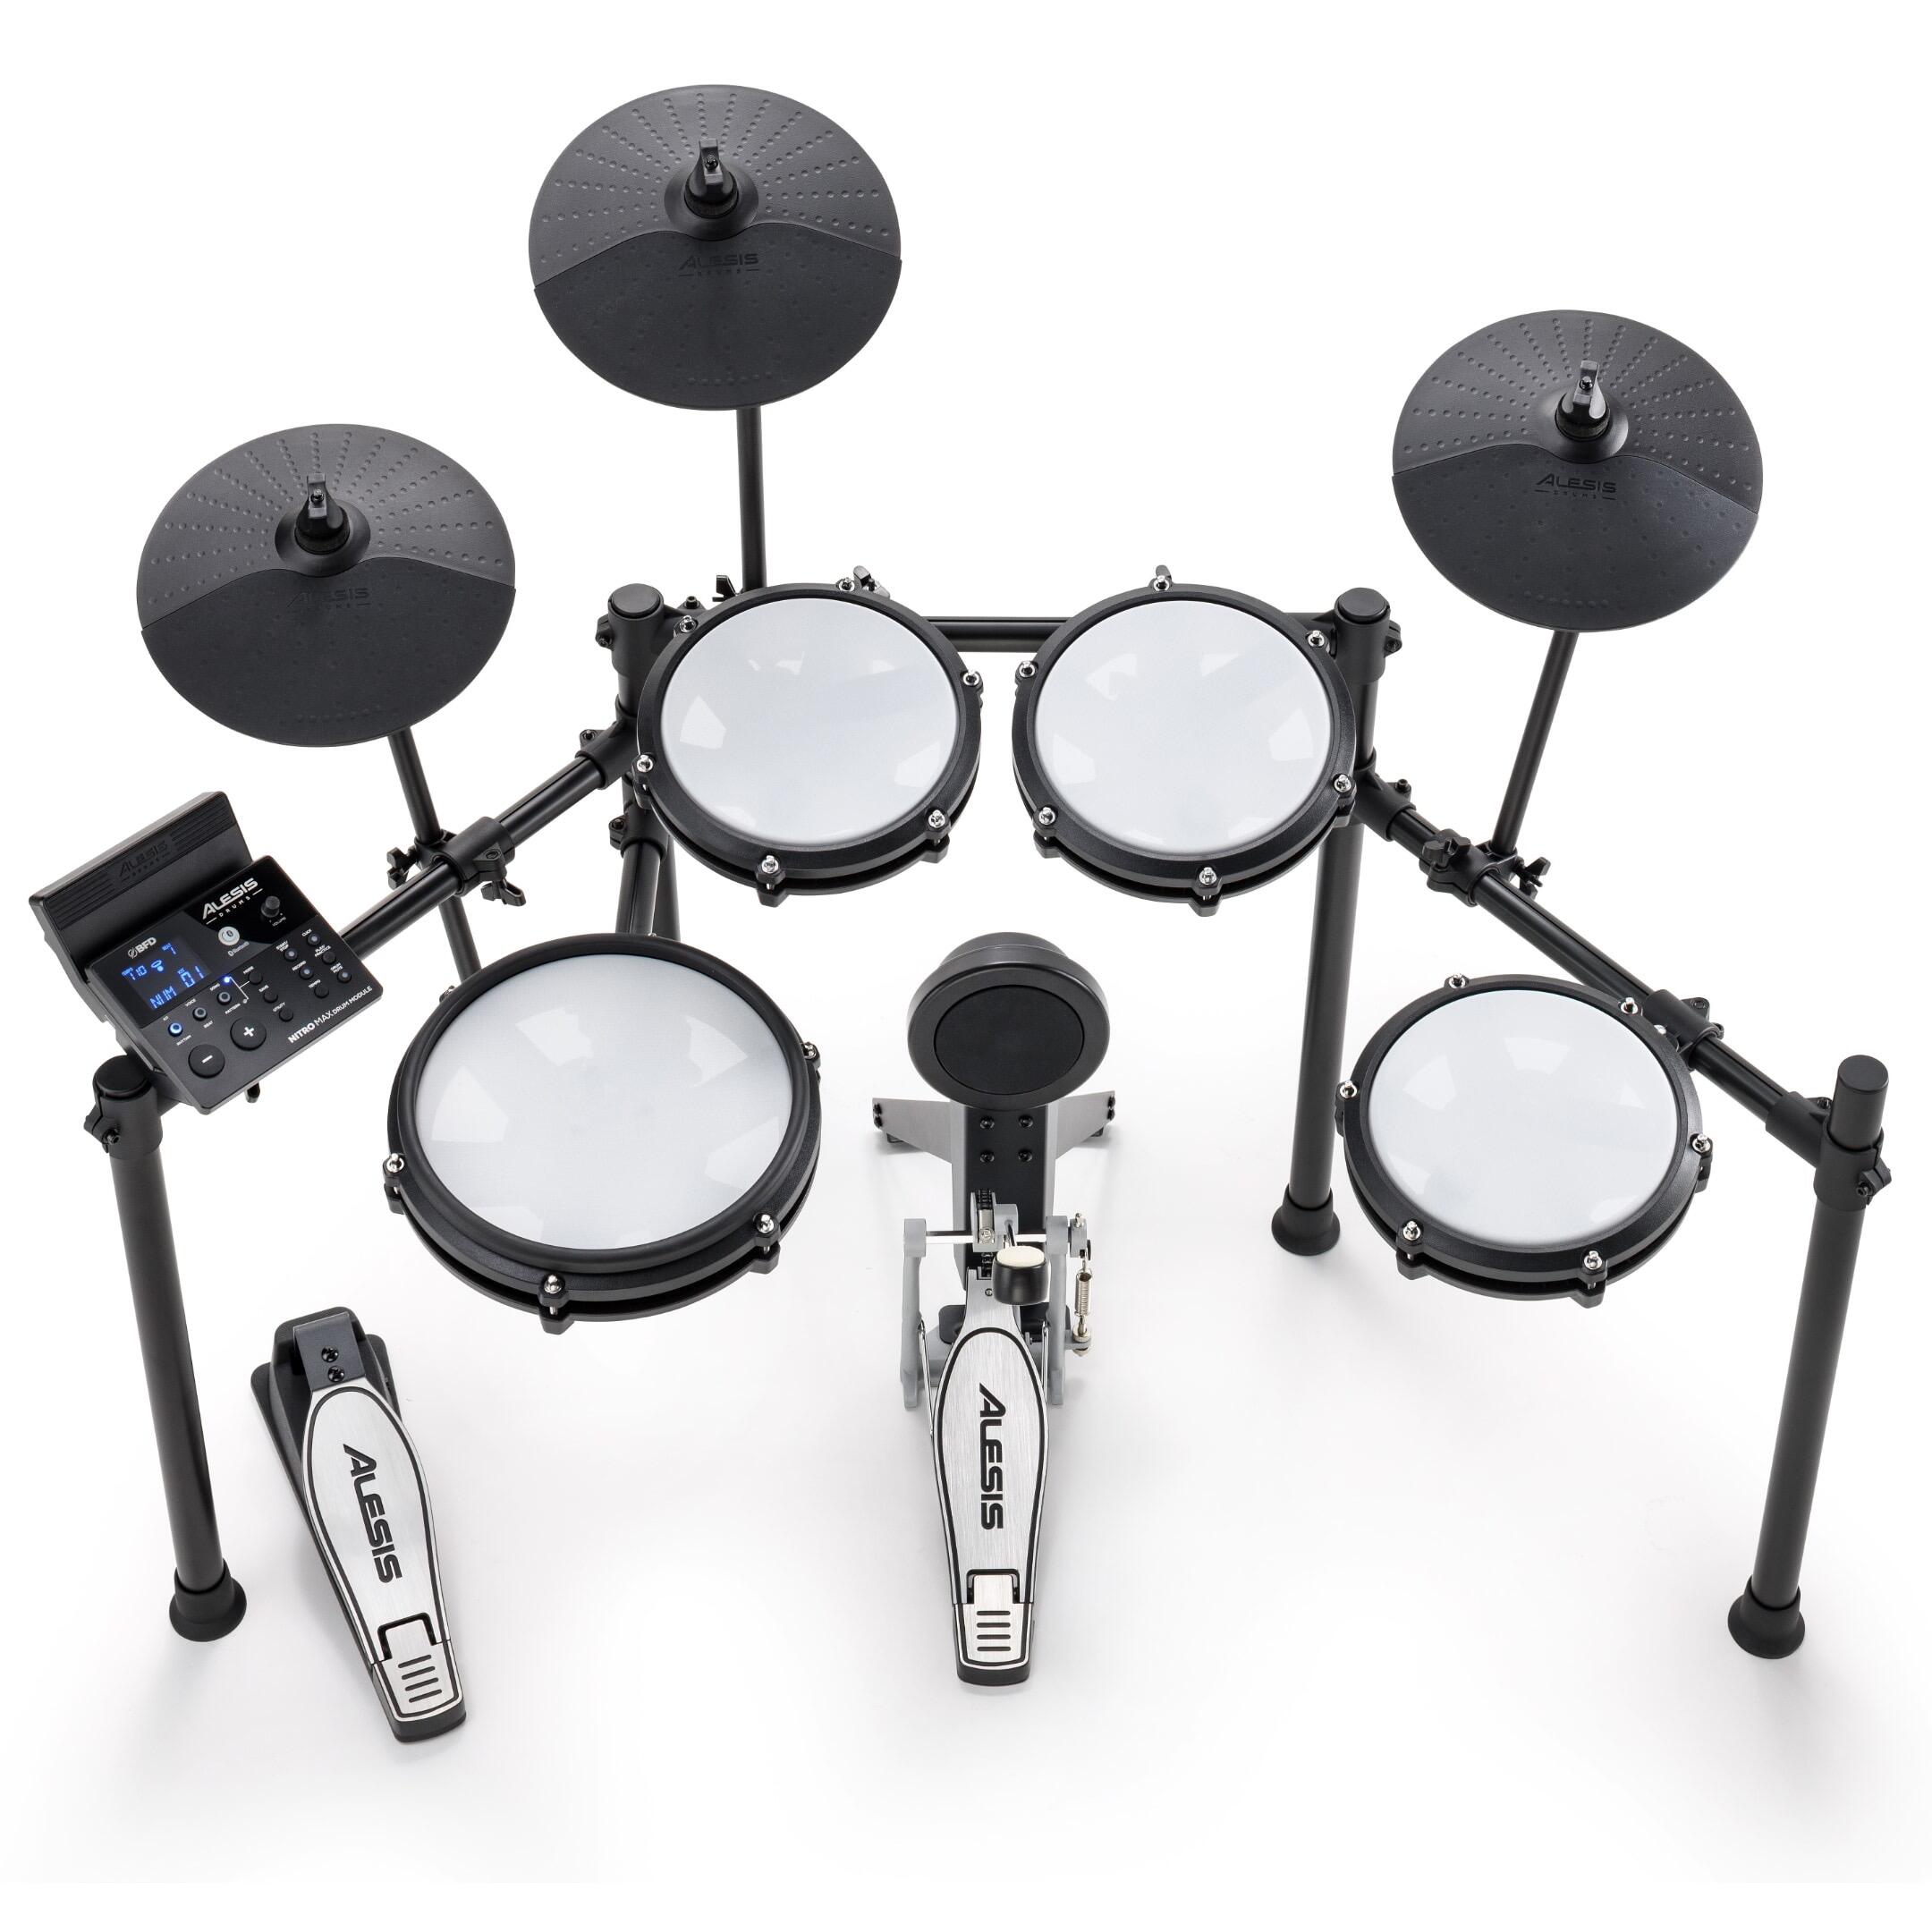 Alesis Nitro Max Kit - Eight Piece Electronic Drum Kit with Mesh 